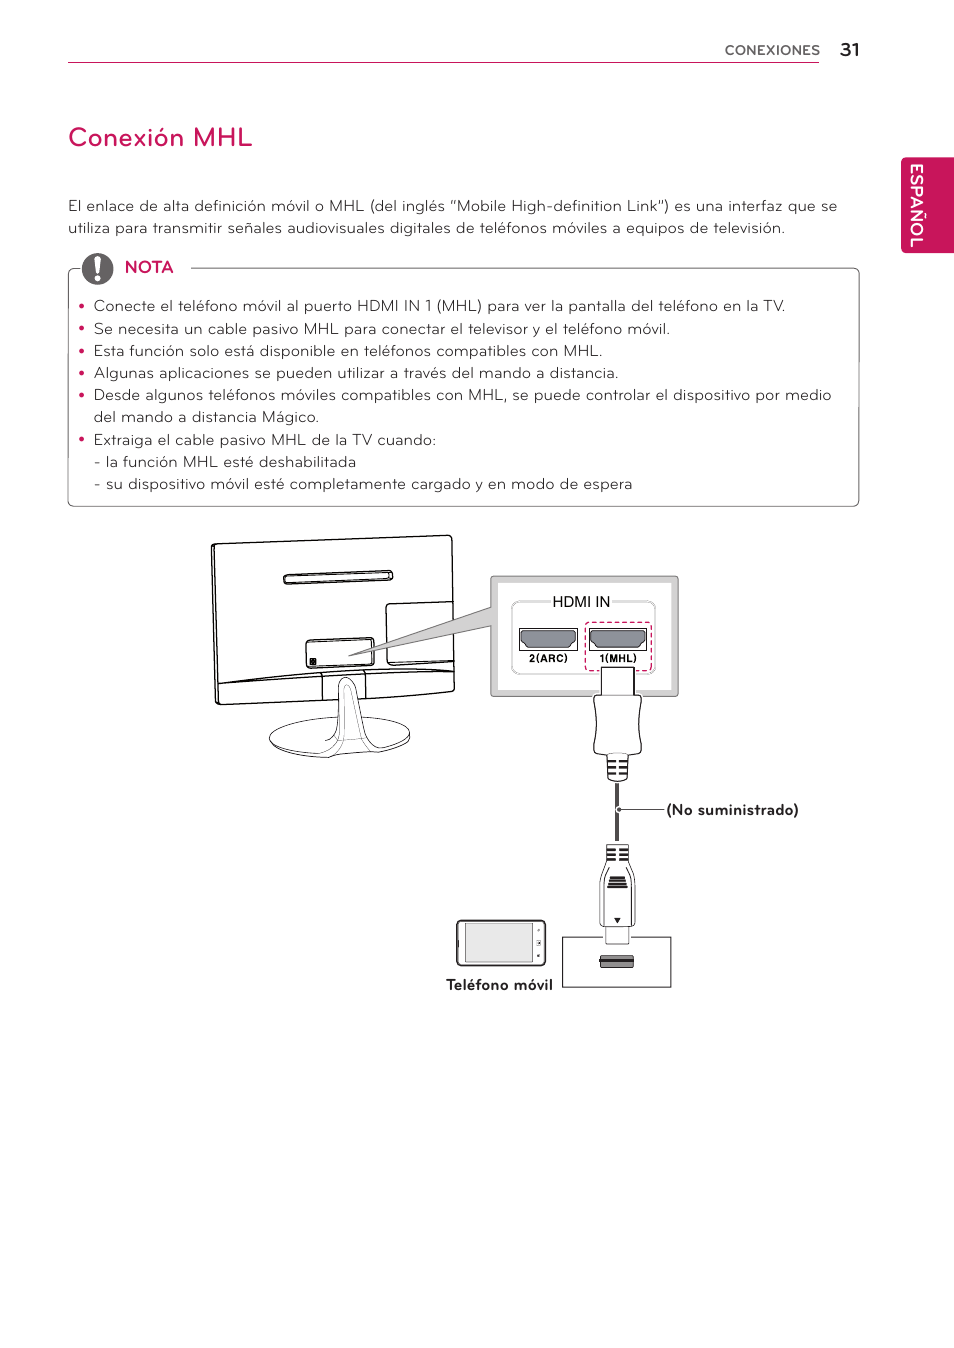 Conexión mhl | LG 24MS53S-PZ Manual del usuario | Página 31 / 46